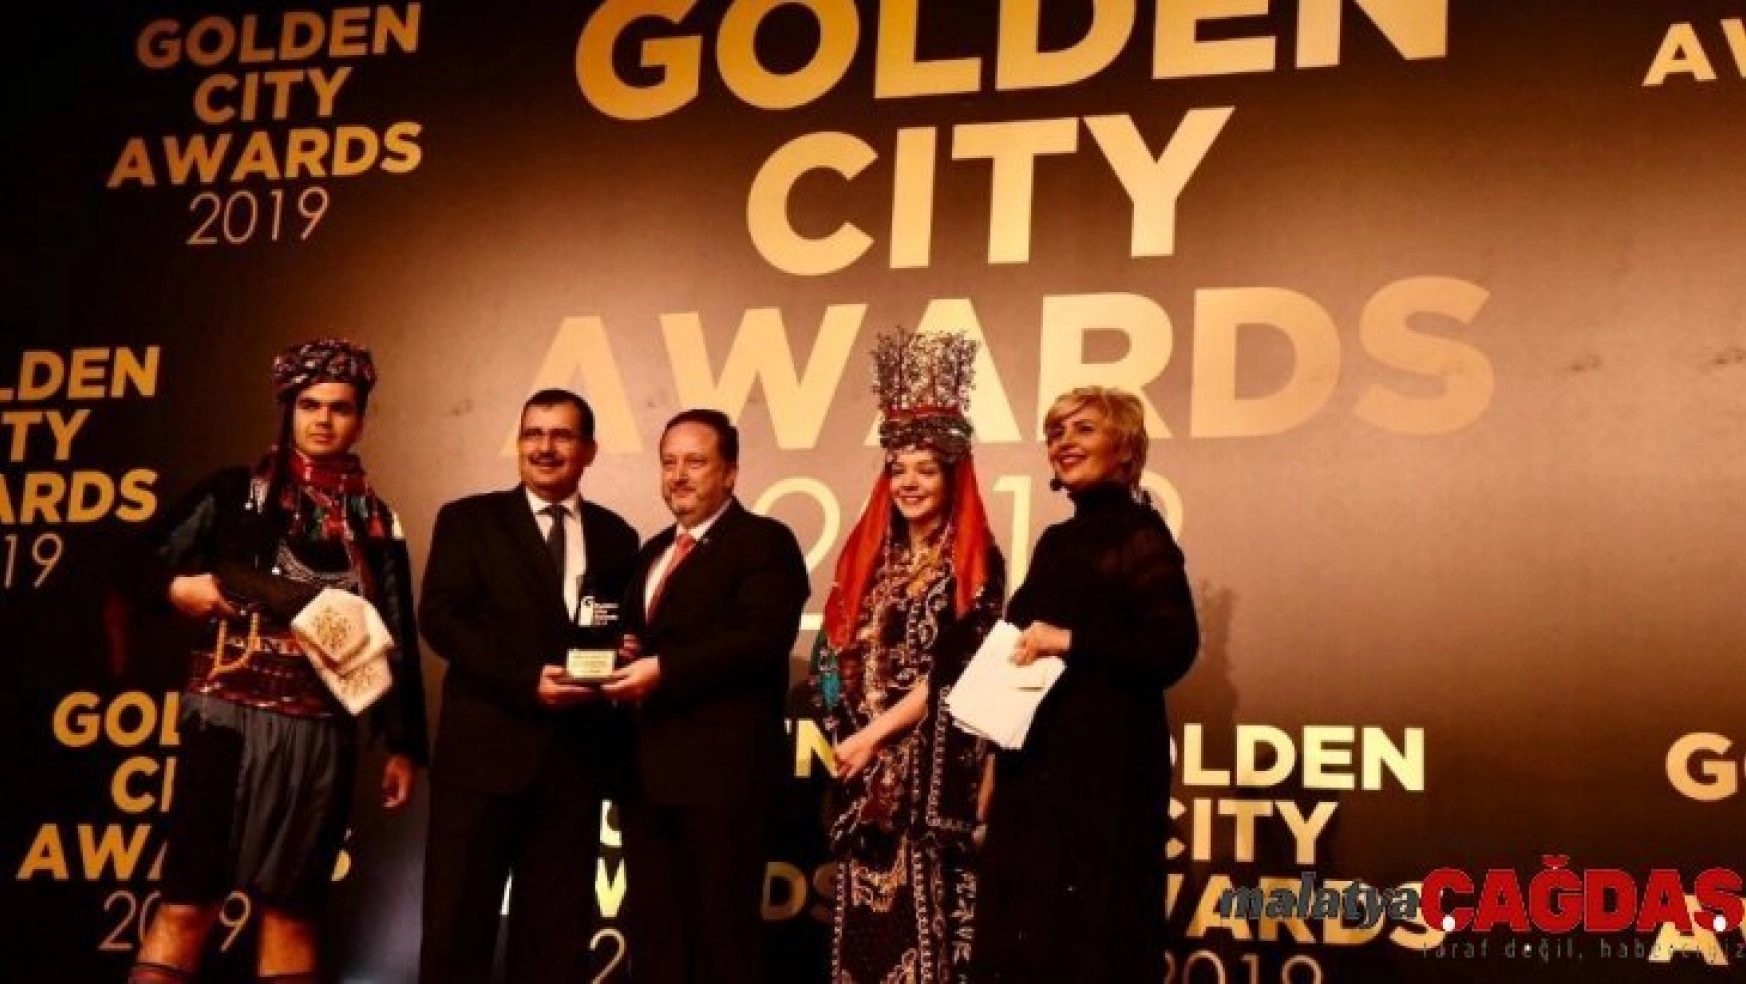 Karesi Belediyesi'ne Golden City Awards ödülü